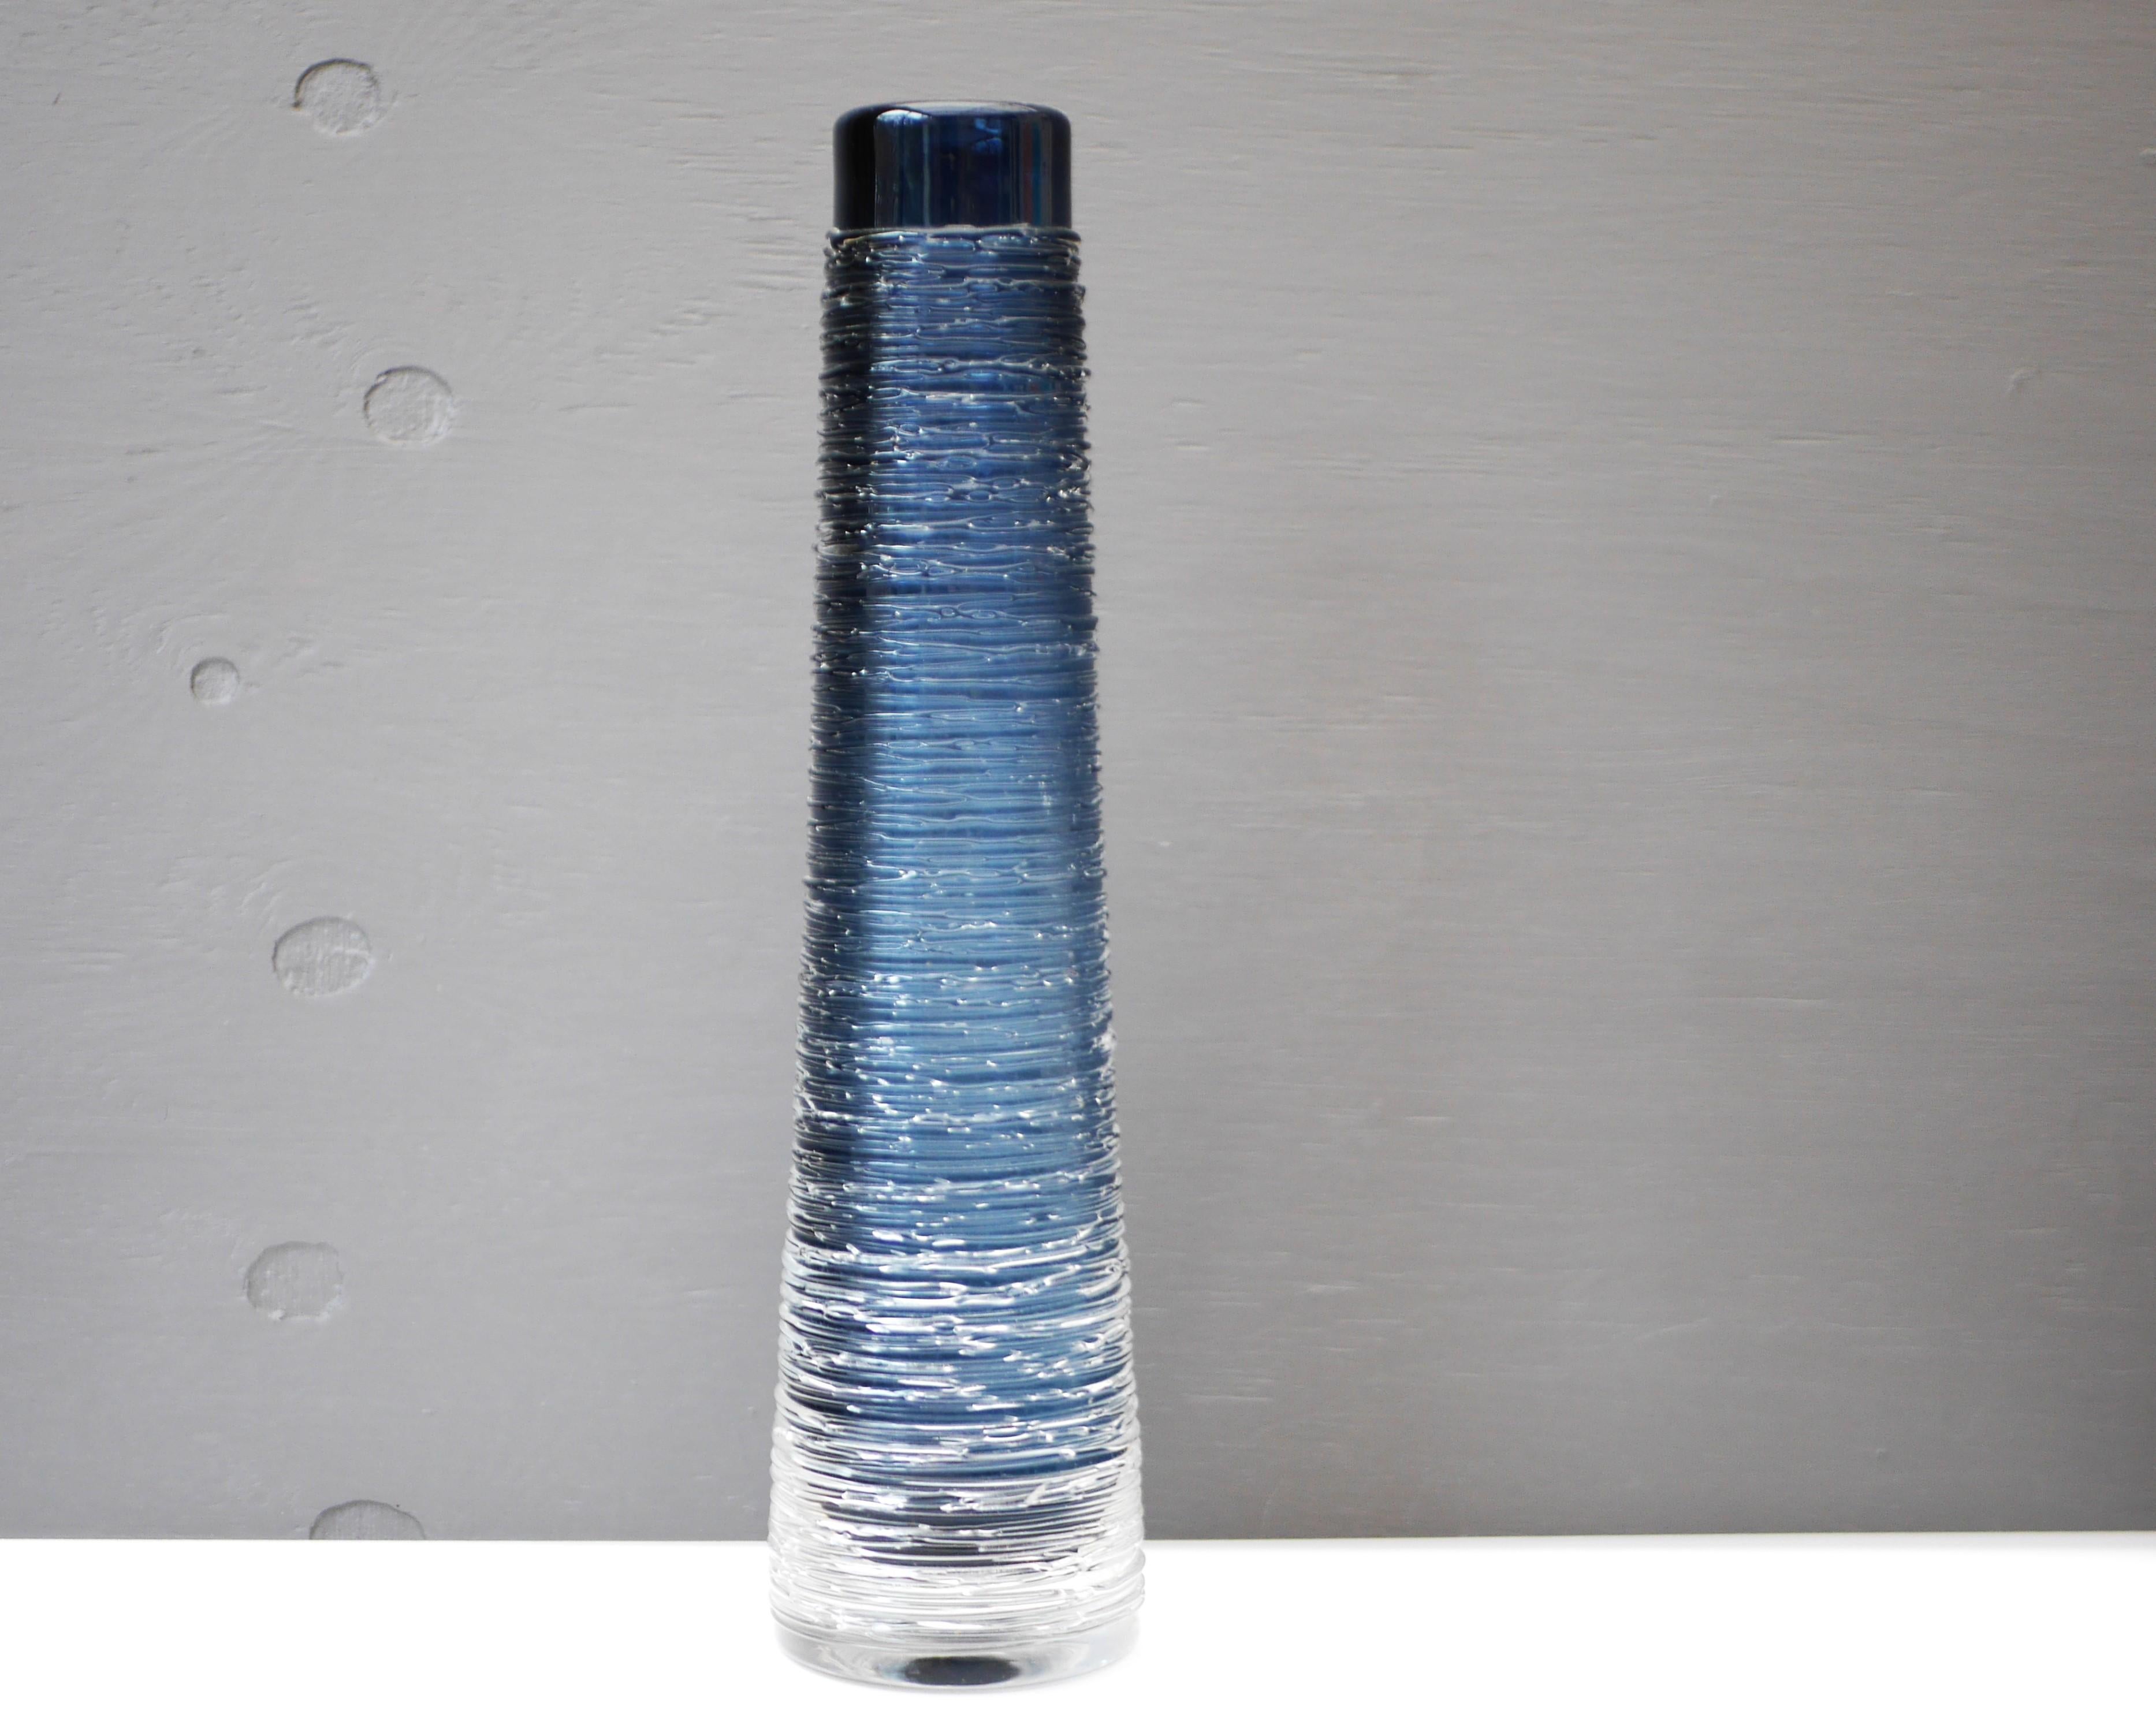 Große dunkelblaue Glasvase von Bengt Edenfalk für die Glashütte Skruf in Schweden, signiert. Aus der Vasen-Serie 'Spun'. 

Bengt Edenfalk (1924-2016) war ein schwedischer Glasdesigner, Maler, Grafiker und Bildhauer, der auch an